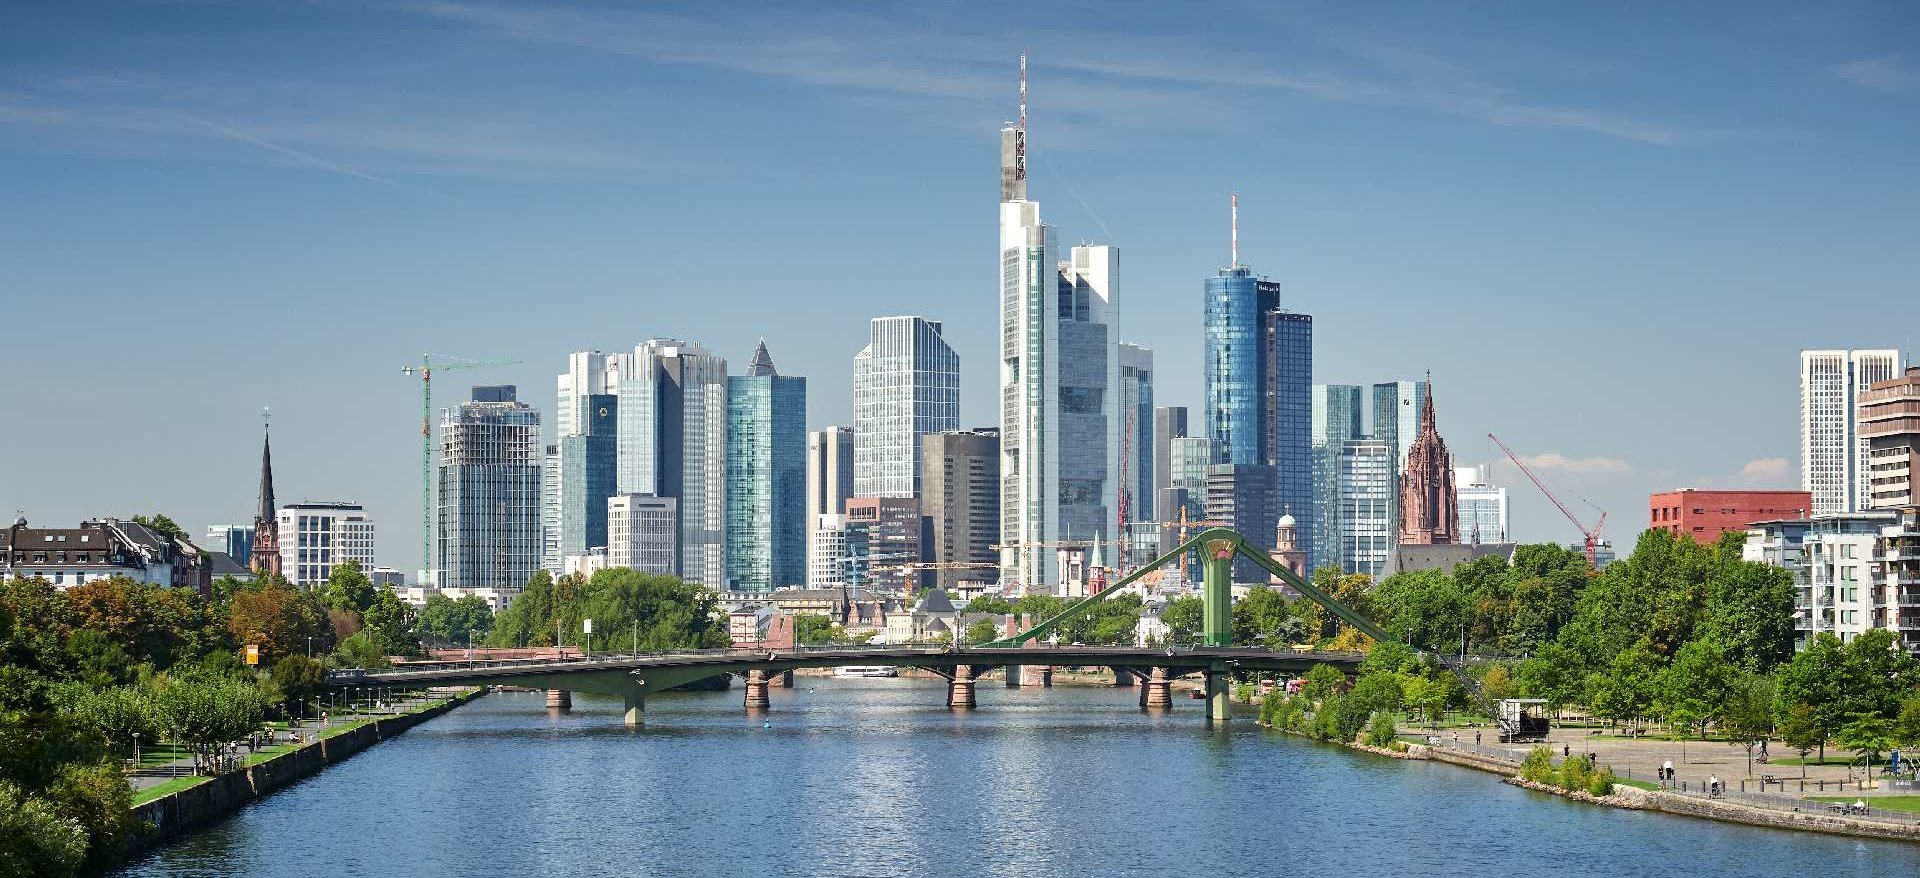 Skyline von Frankfurt am Main als Symbolbild für die Sustainable Finance Disclosure Regulation (SFDR).